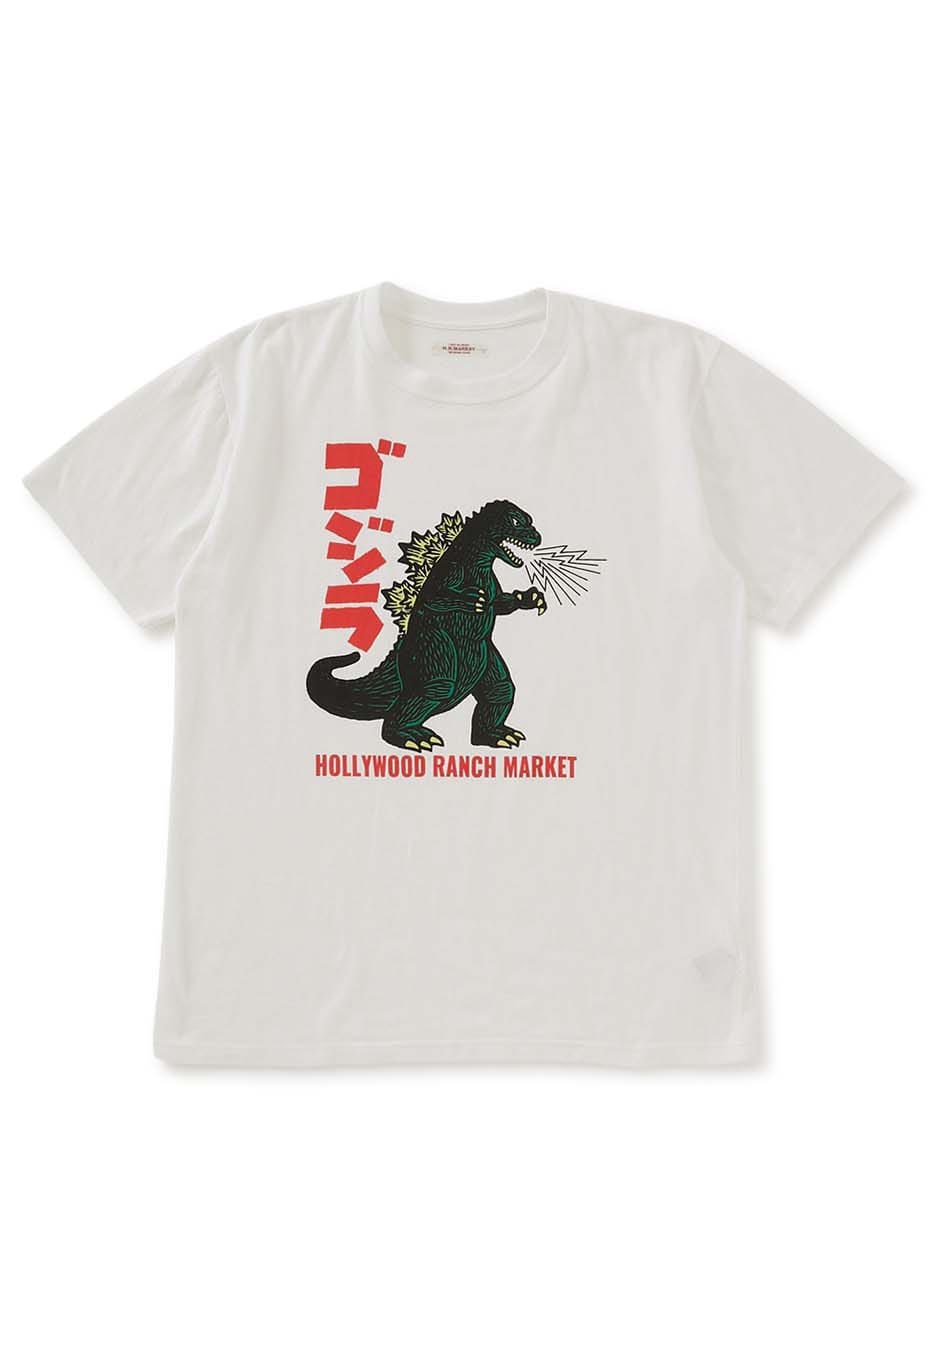 ゴジラ×HOLLYWOOD RANCH MARKET /レトロゴジラモチーフTシャツ